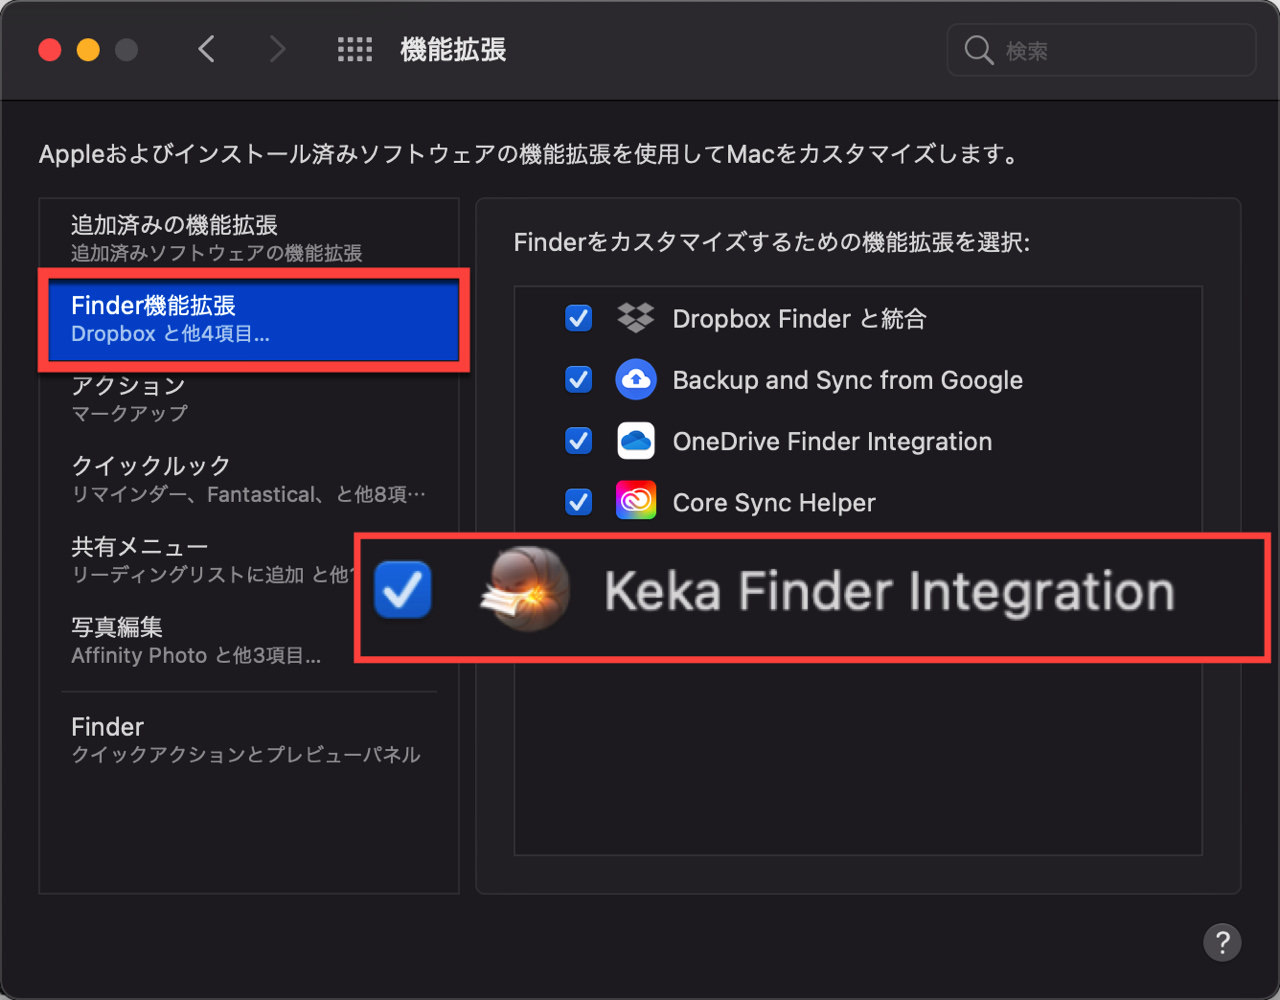 Keka Finder Integration にチェックを入れる